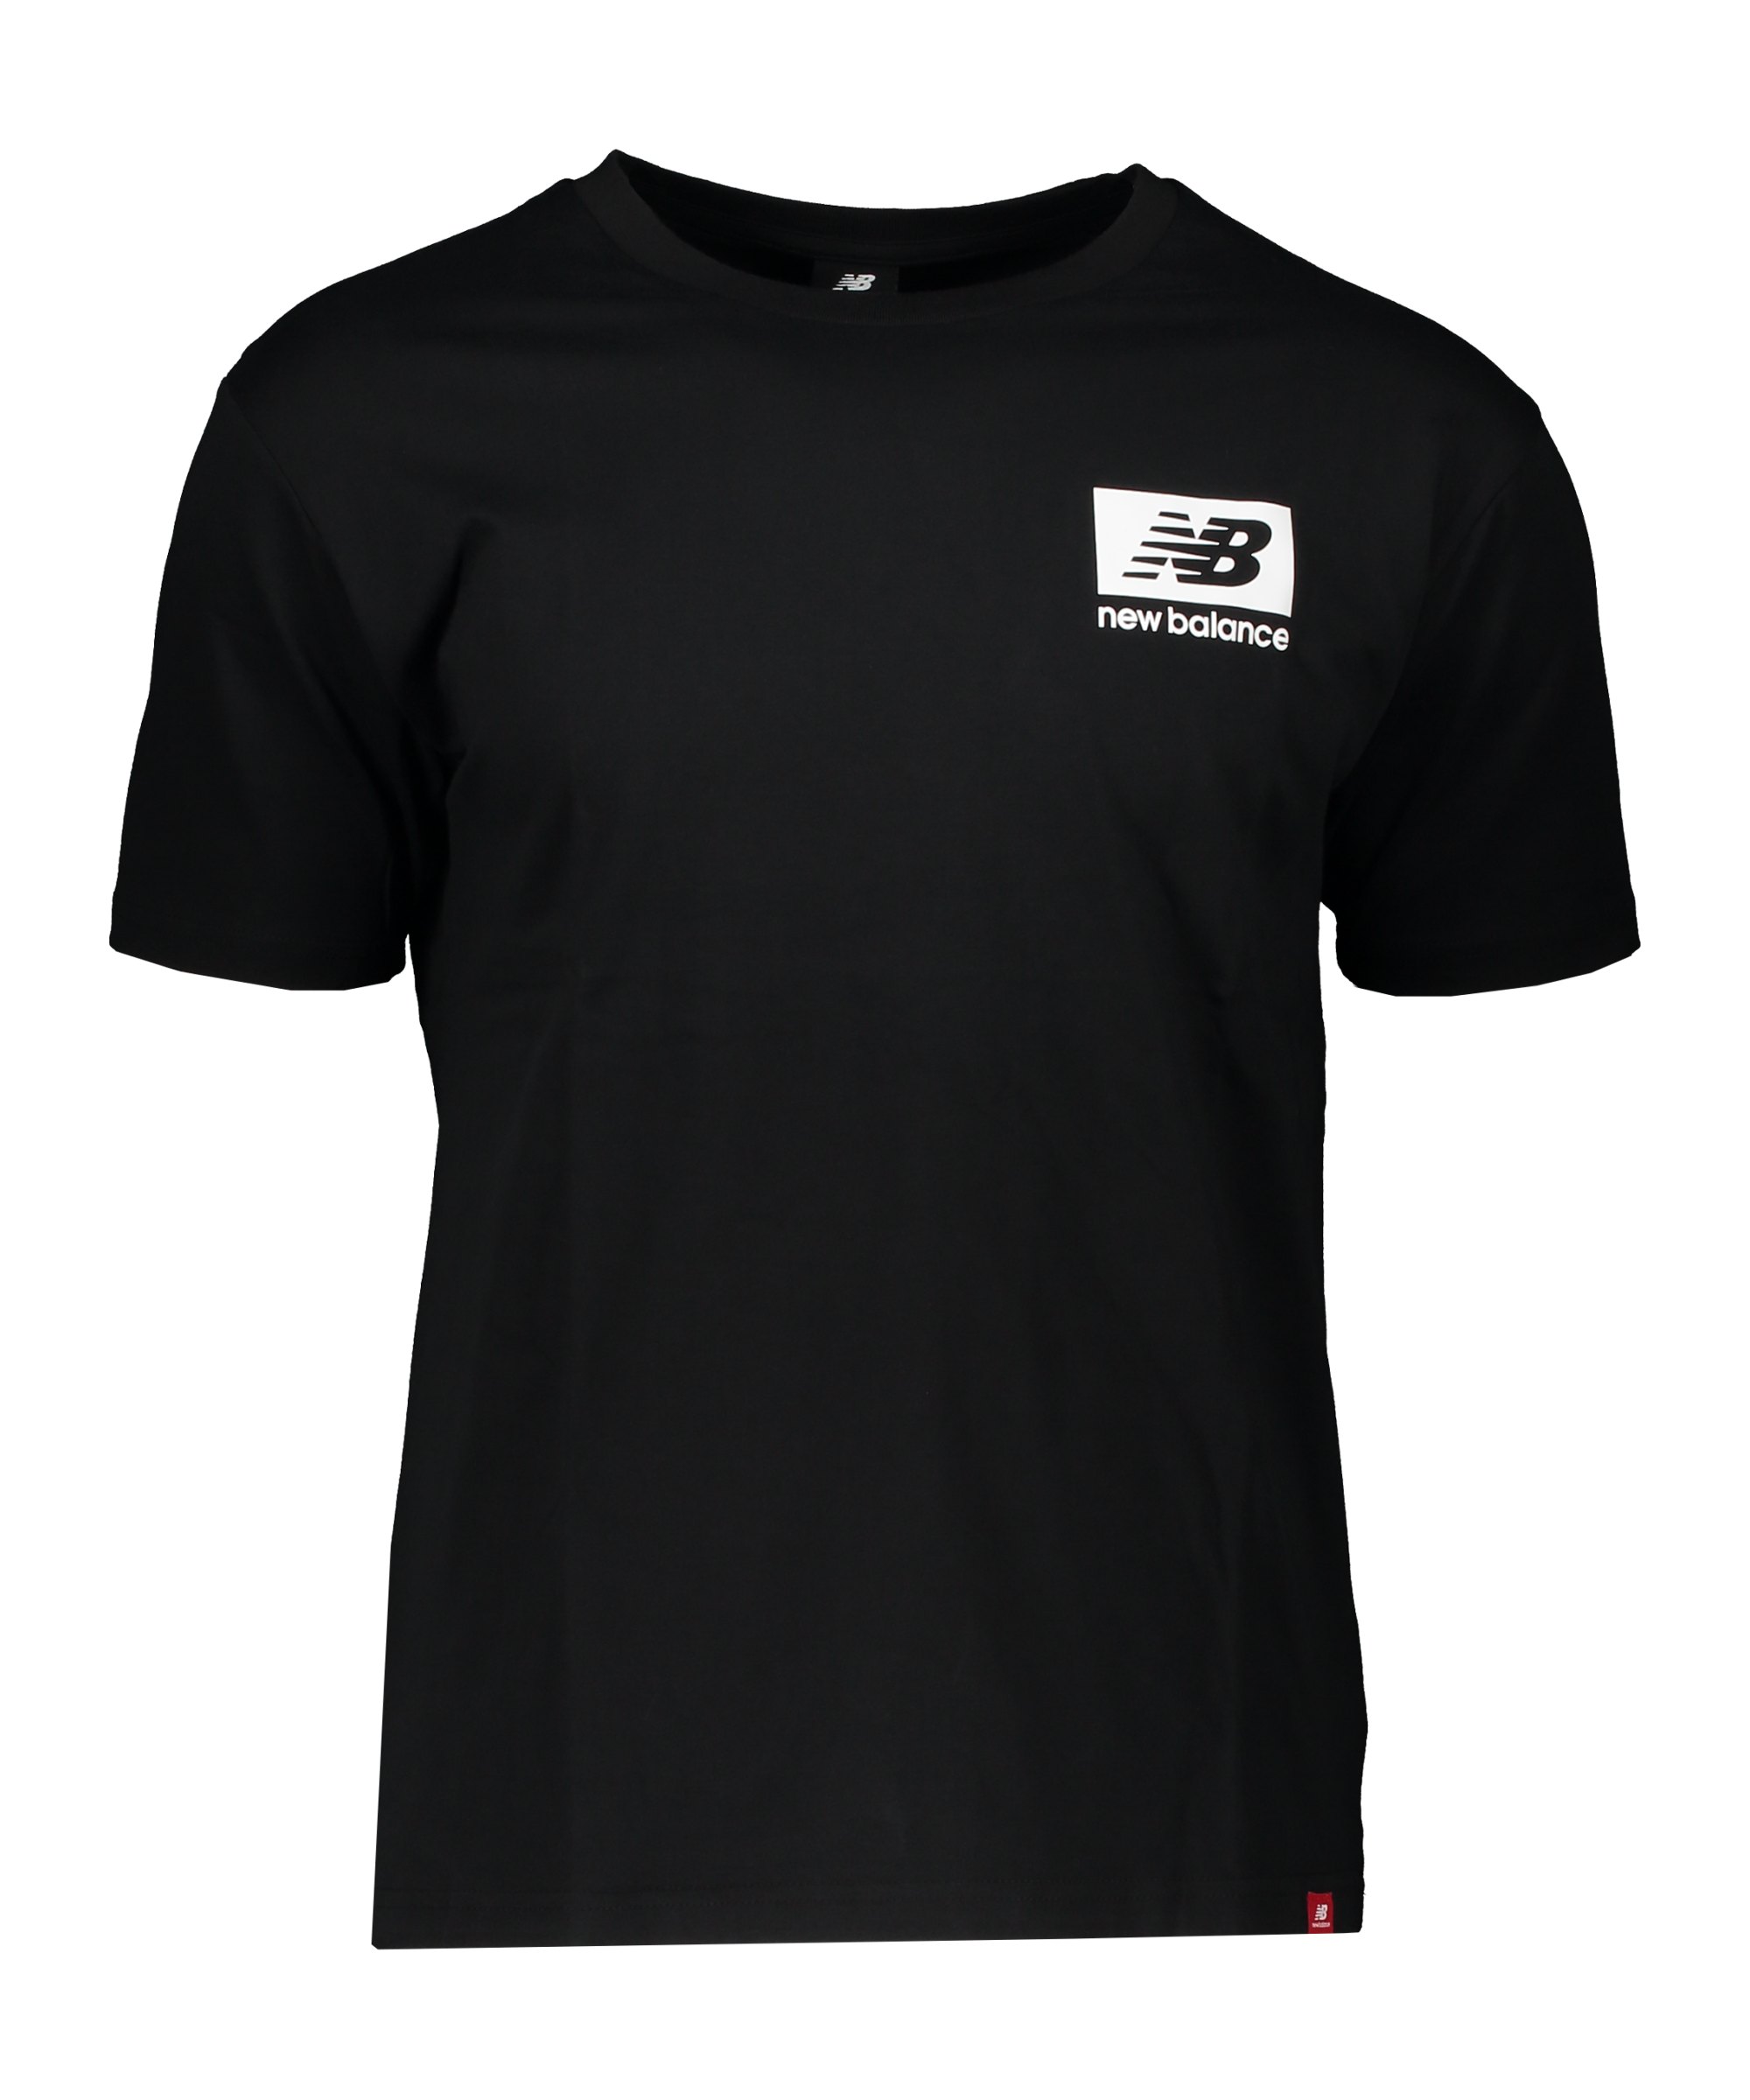 New Balance Essentials T-Shirt Schwarz FBK MT13518 - schwarz